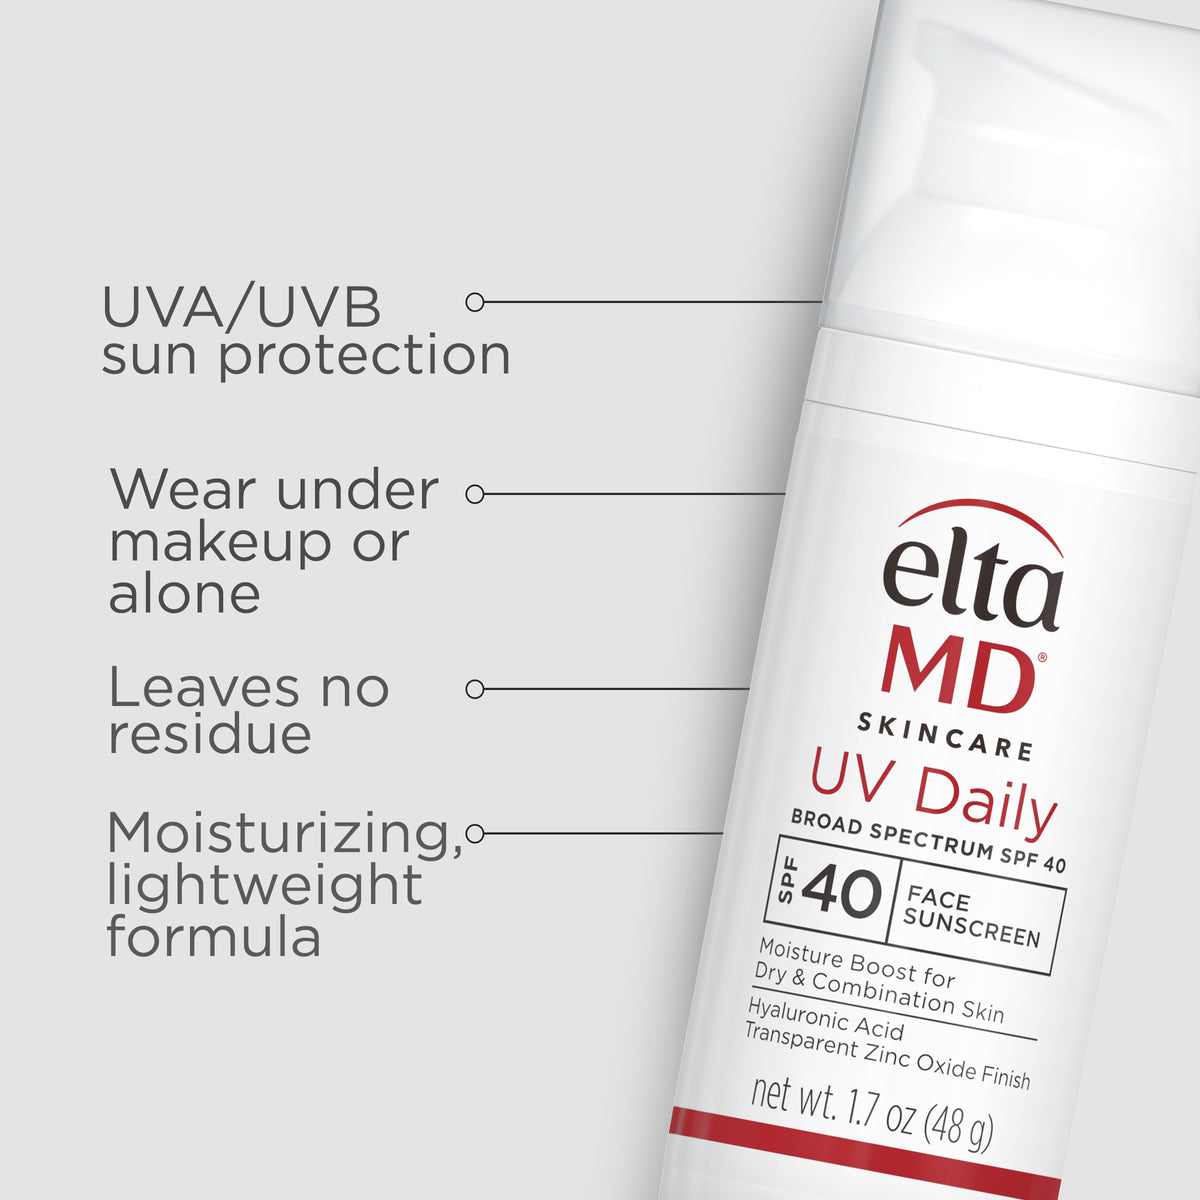 eltaMD UV daily: a sunscreen SPF 40